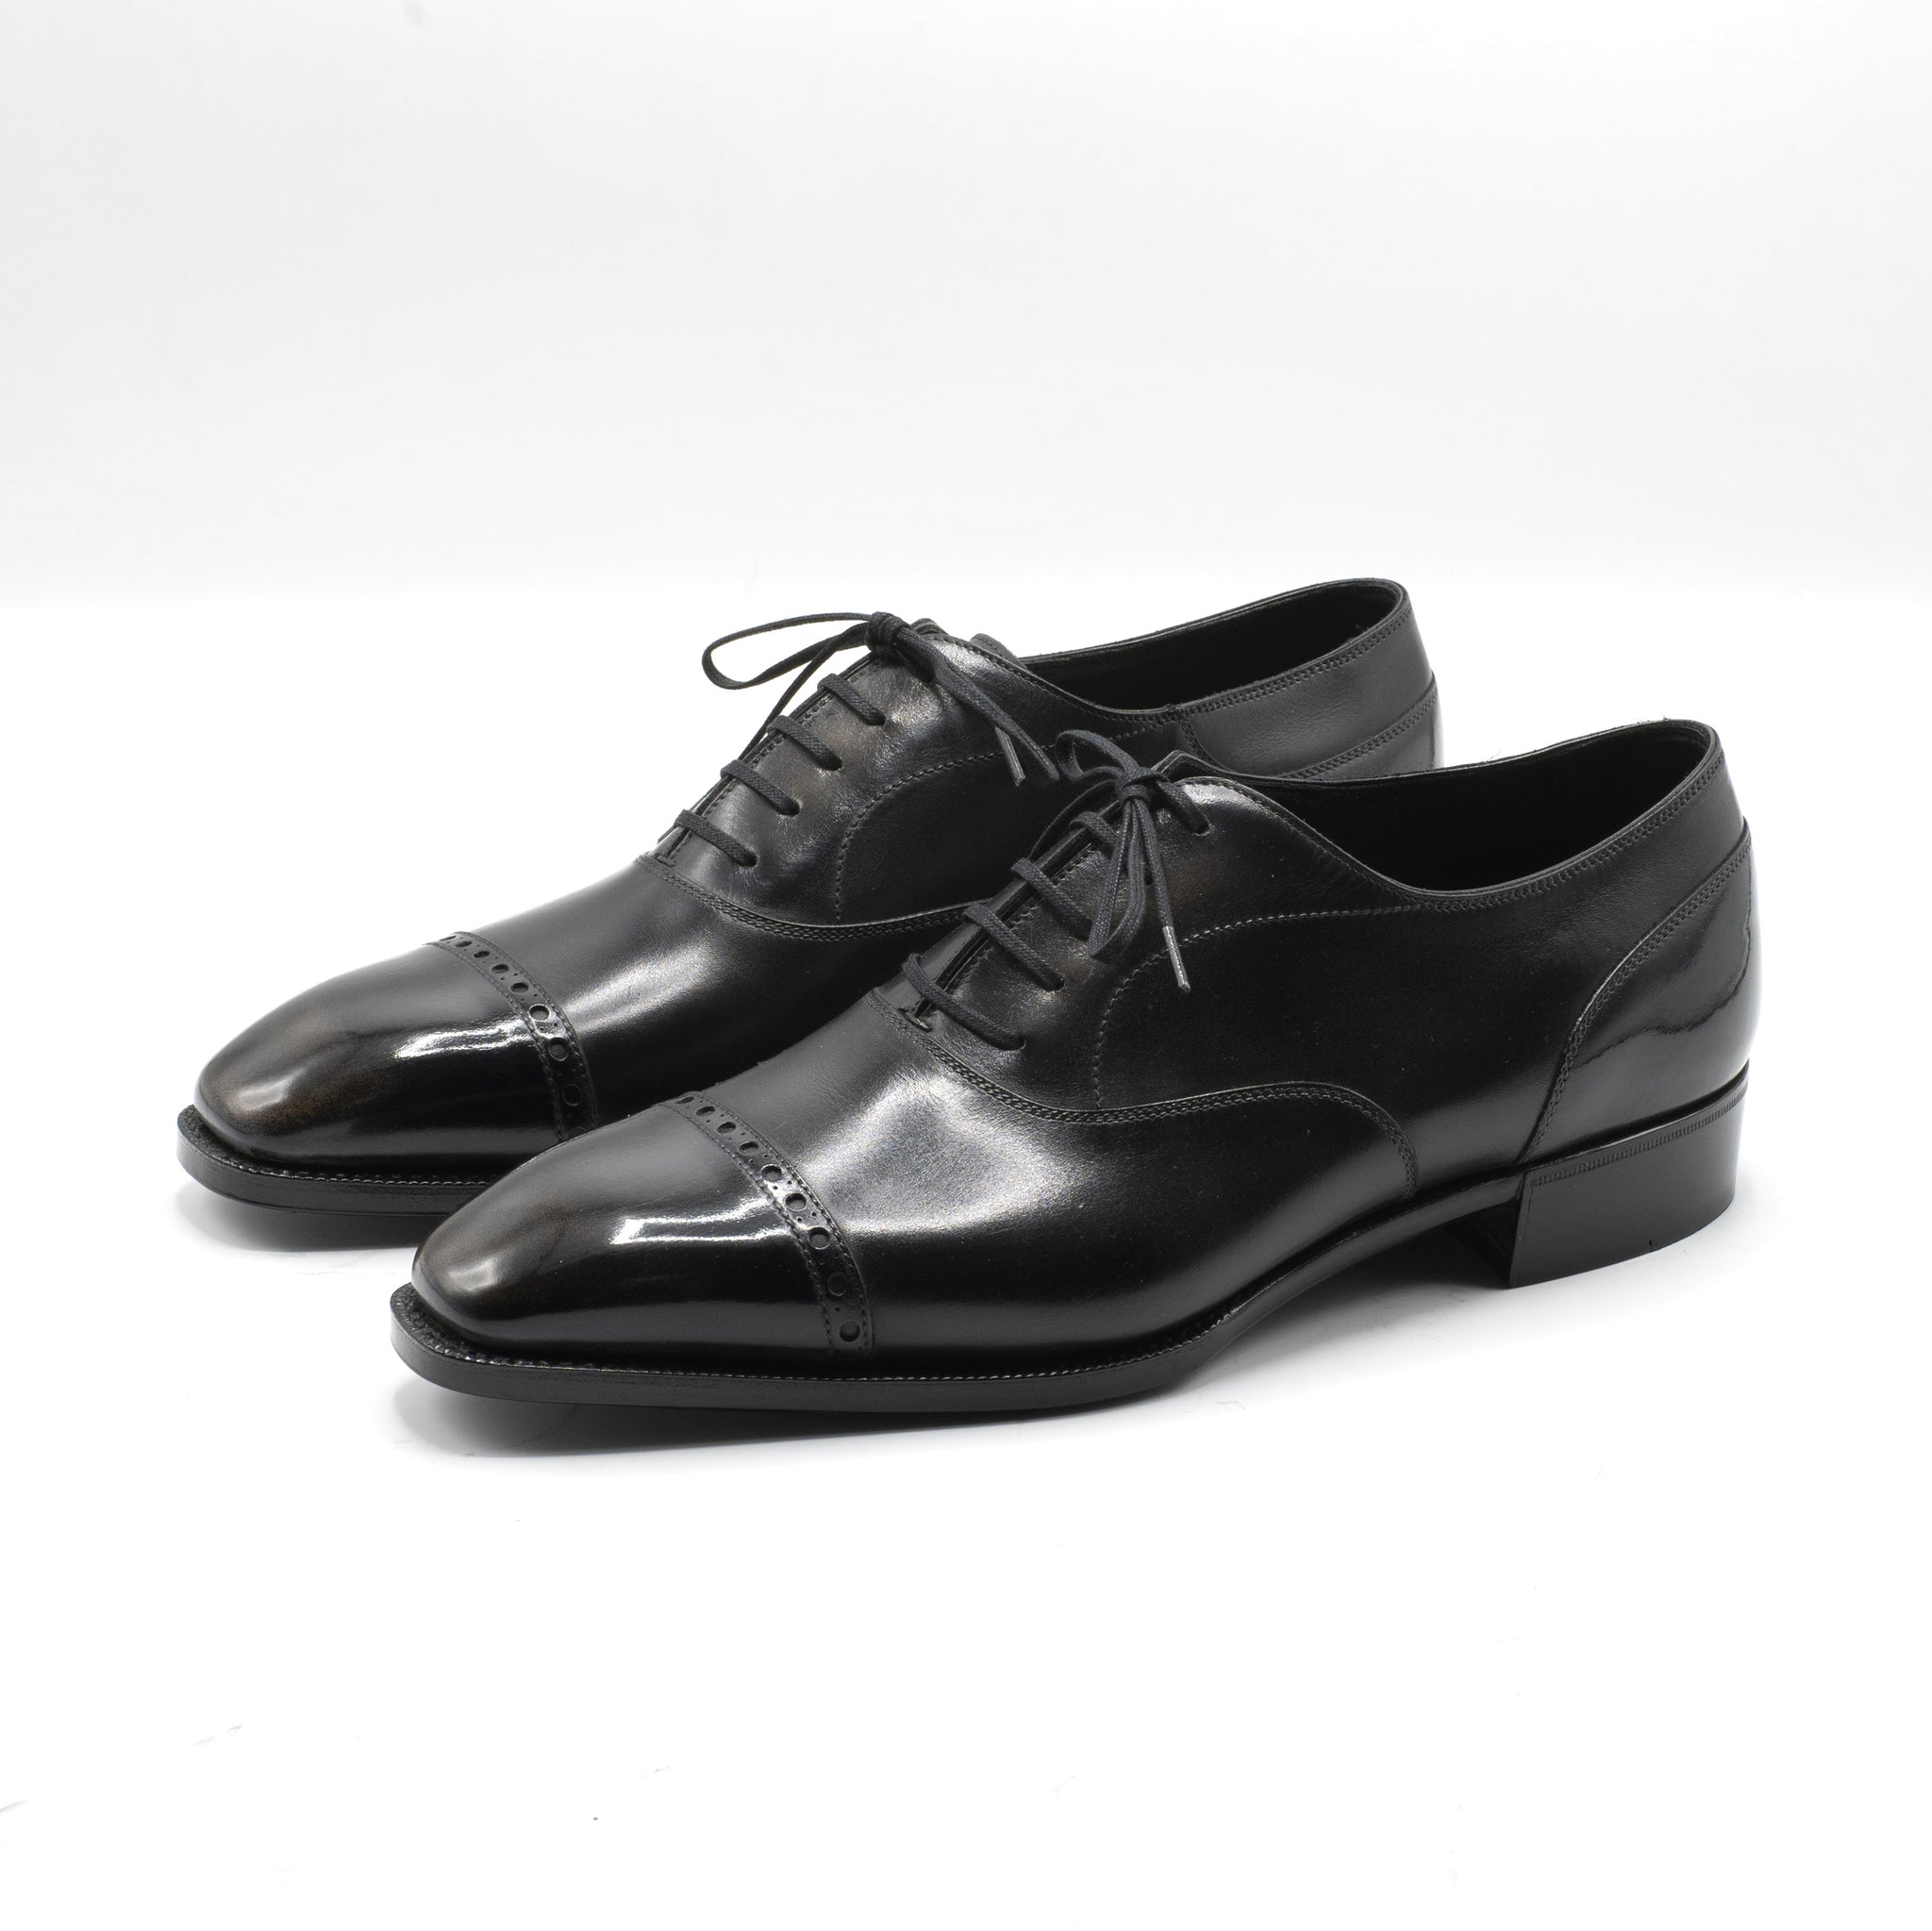 Mario Cap Toe Oxford Shoe | Norman Vilalta Bespoke Shoemakers